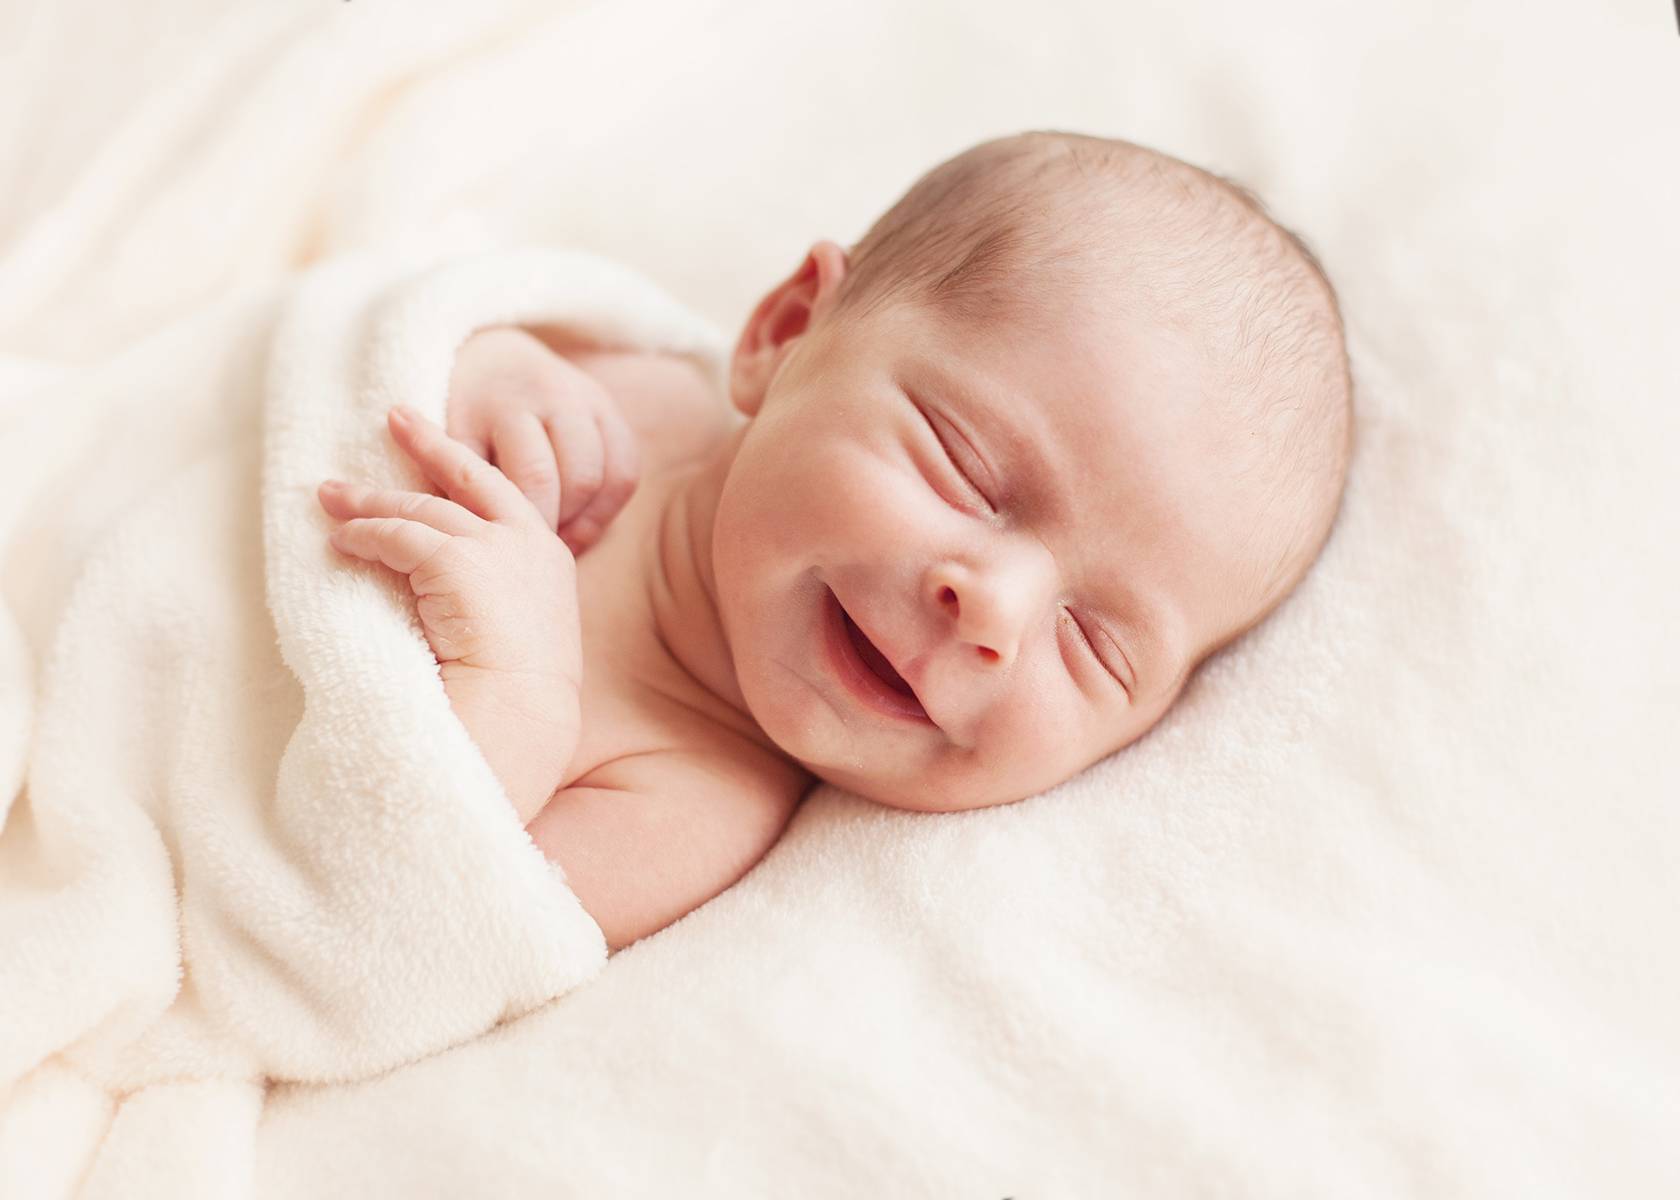 Врачи молчат об этом: 9 чудных фактов о новорожденных